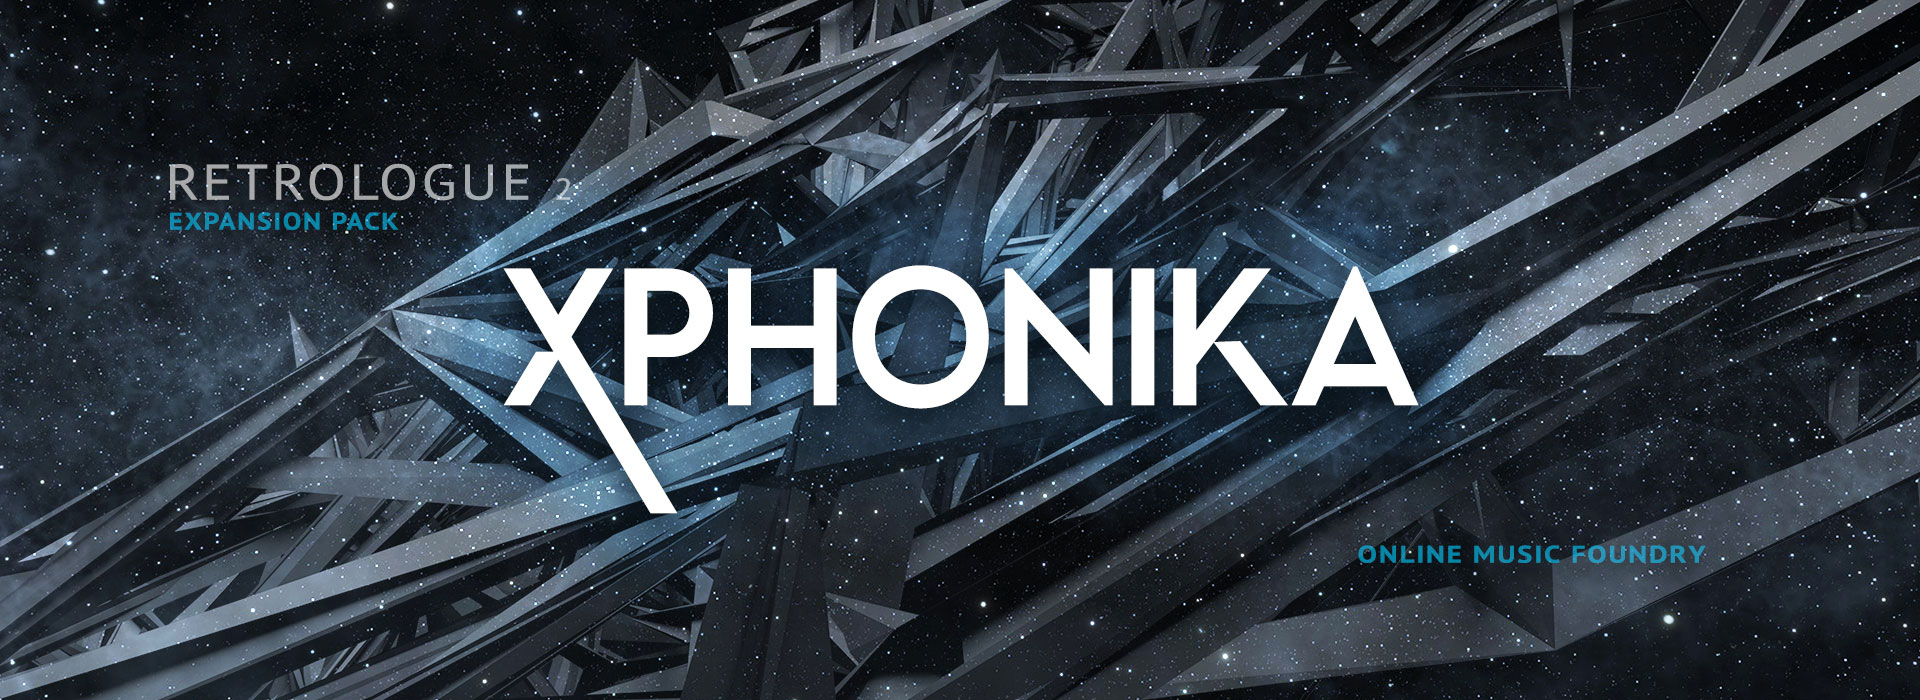 Xphonika